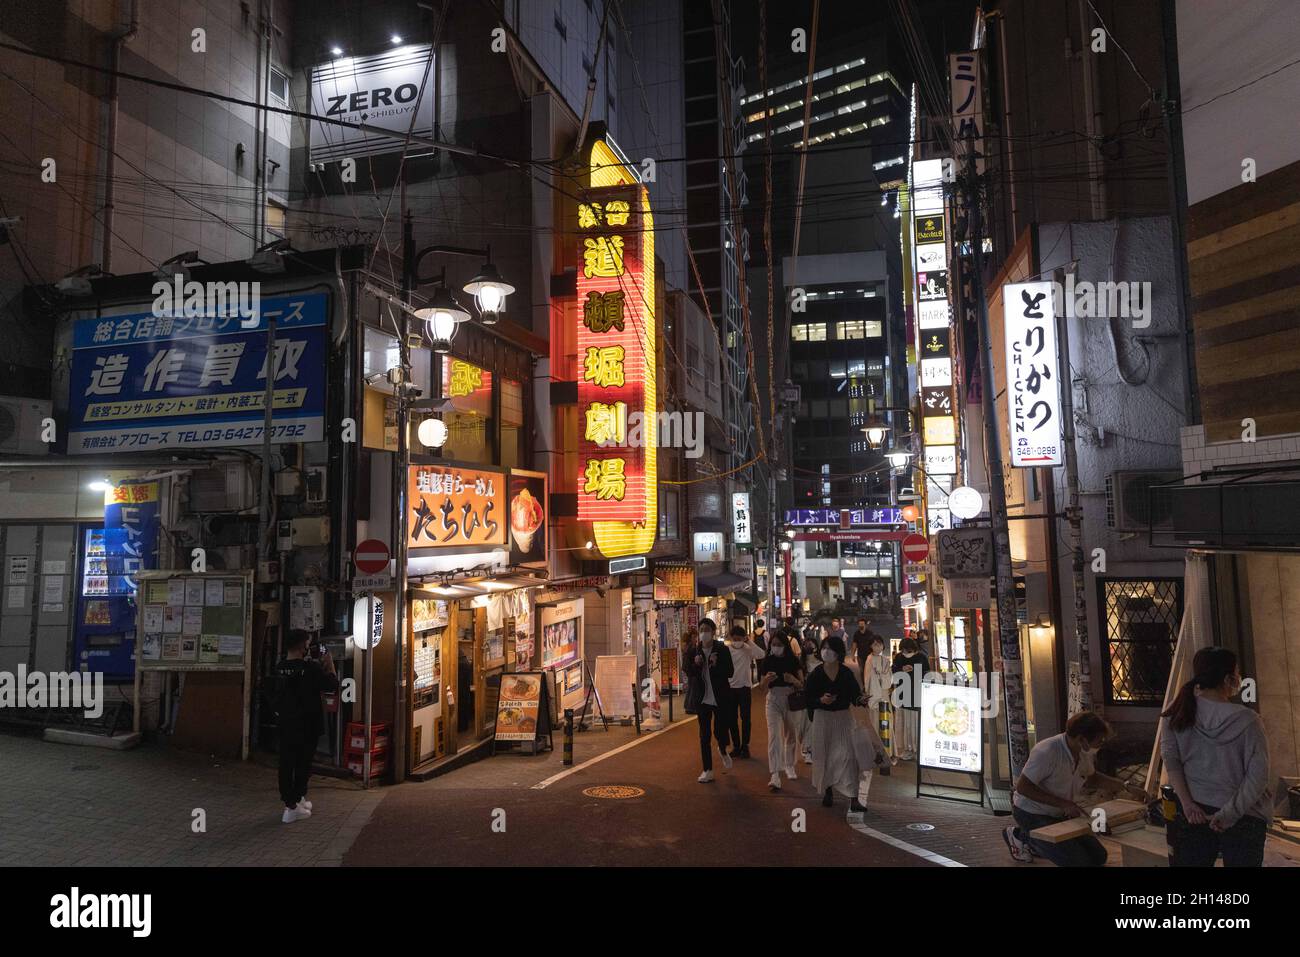 Die Menschen laufen entlang der Hyakkendana Straße im Shibuya Bezirk, Tokio.das Nachtleben im Unterhaltungsviertel von Tokio Shibuya kehrt wieder zur Normalität zurück, nachdem der mit dem Coronavirus verbundene Ausnahmezustand in Tokio aufgehoben wurde. Restaurants und Bars können abends geöffnet sein und wieder Alkohol servieren. (Foto von Stanislav Kogiku / SOPA Images/Sipa USA) Stockfoto